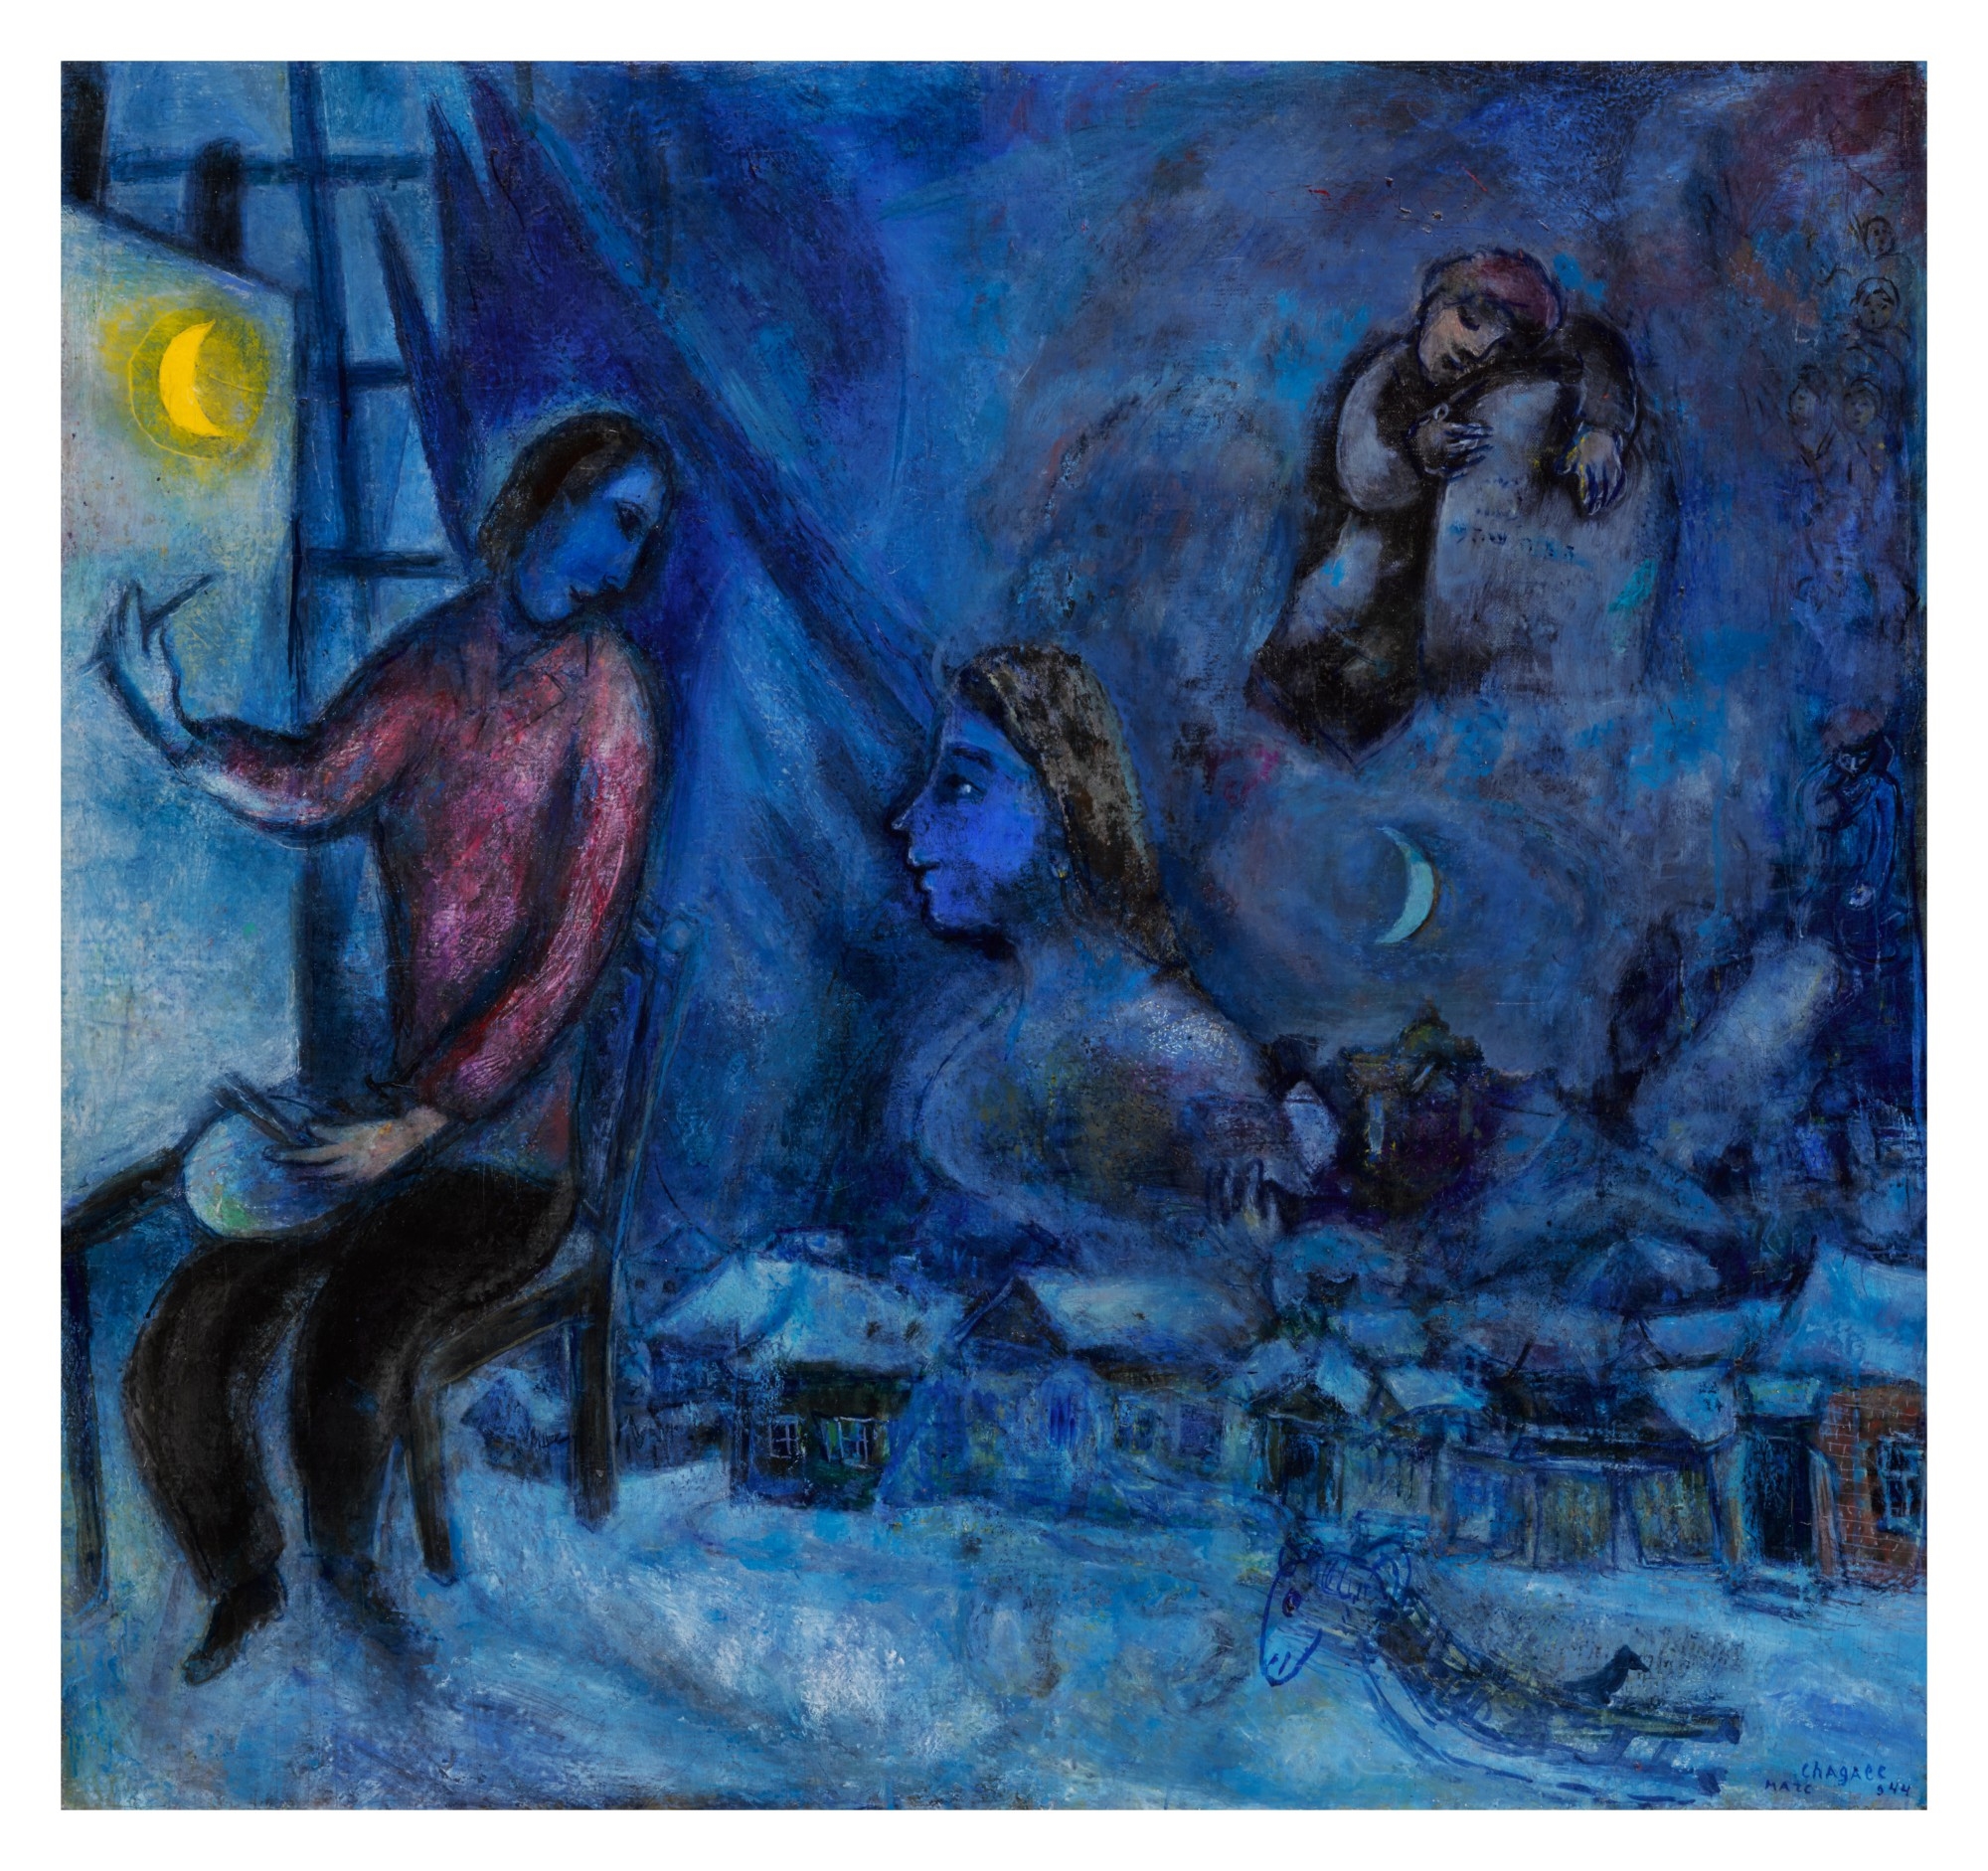 Hommage au passé (La Ville) by Marc Chagall, dated 1944